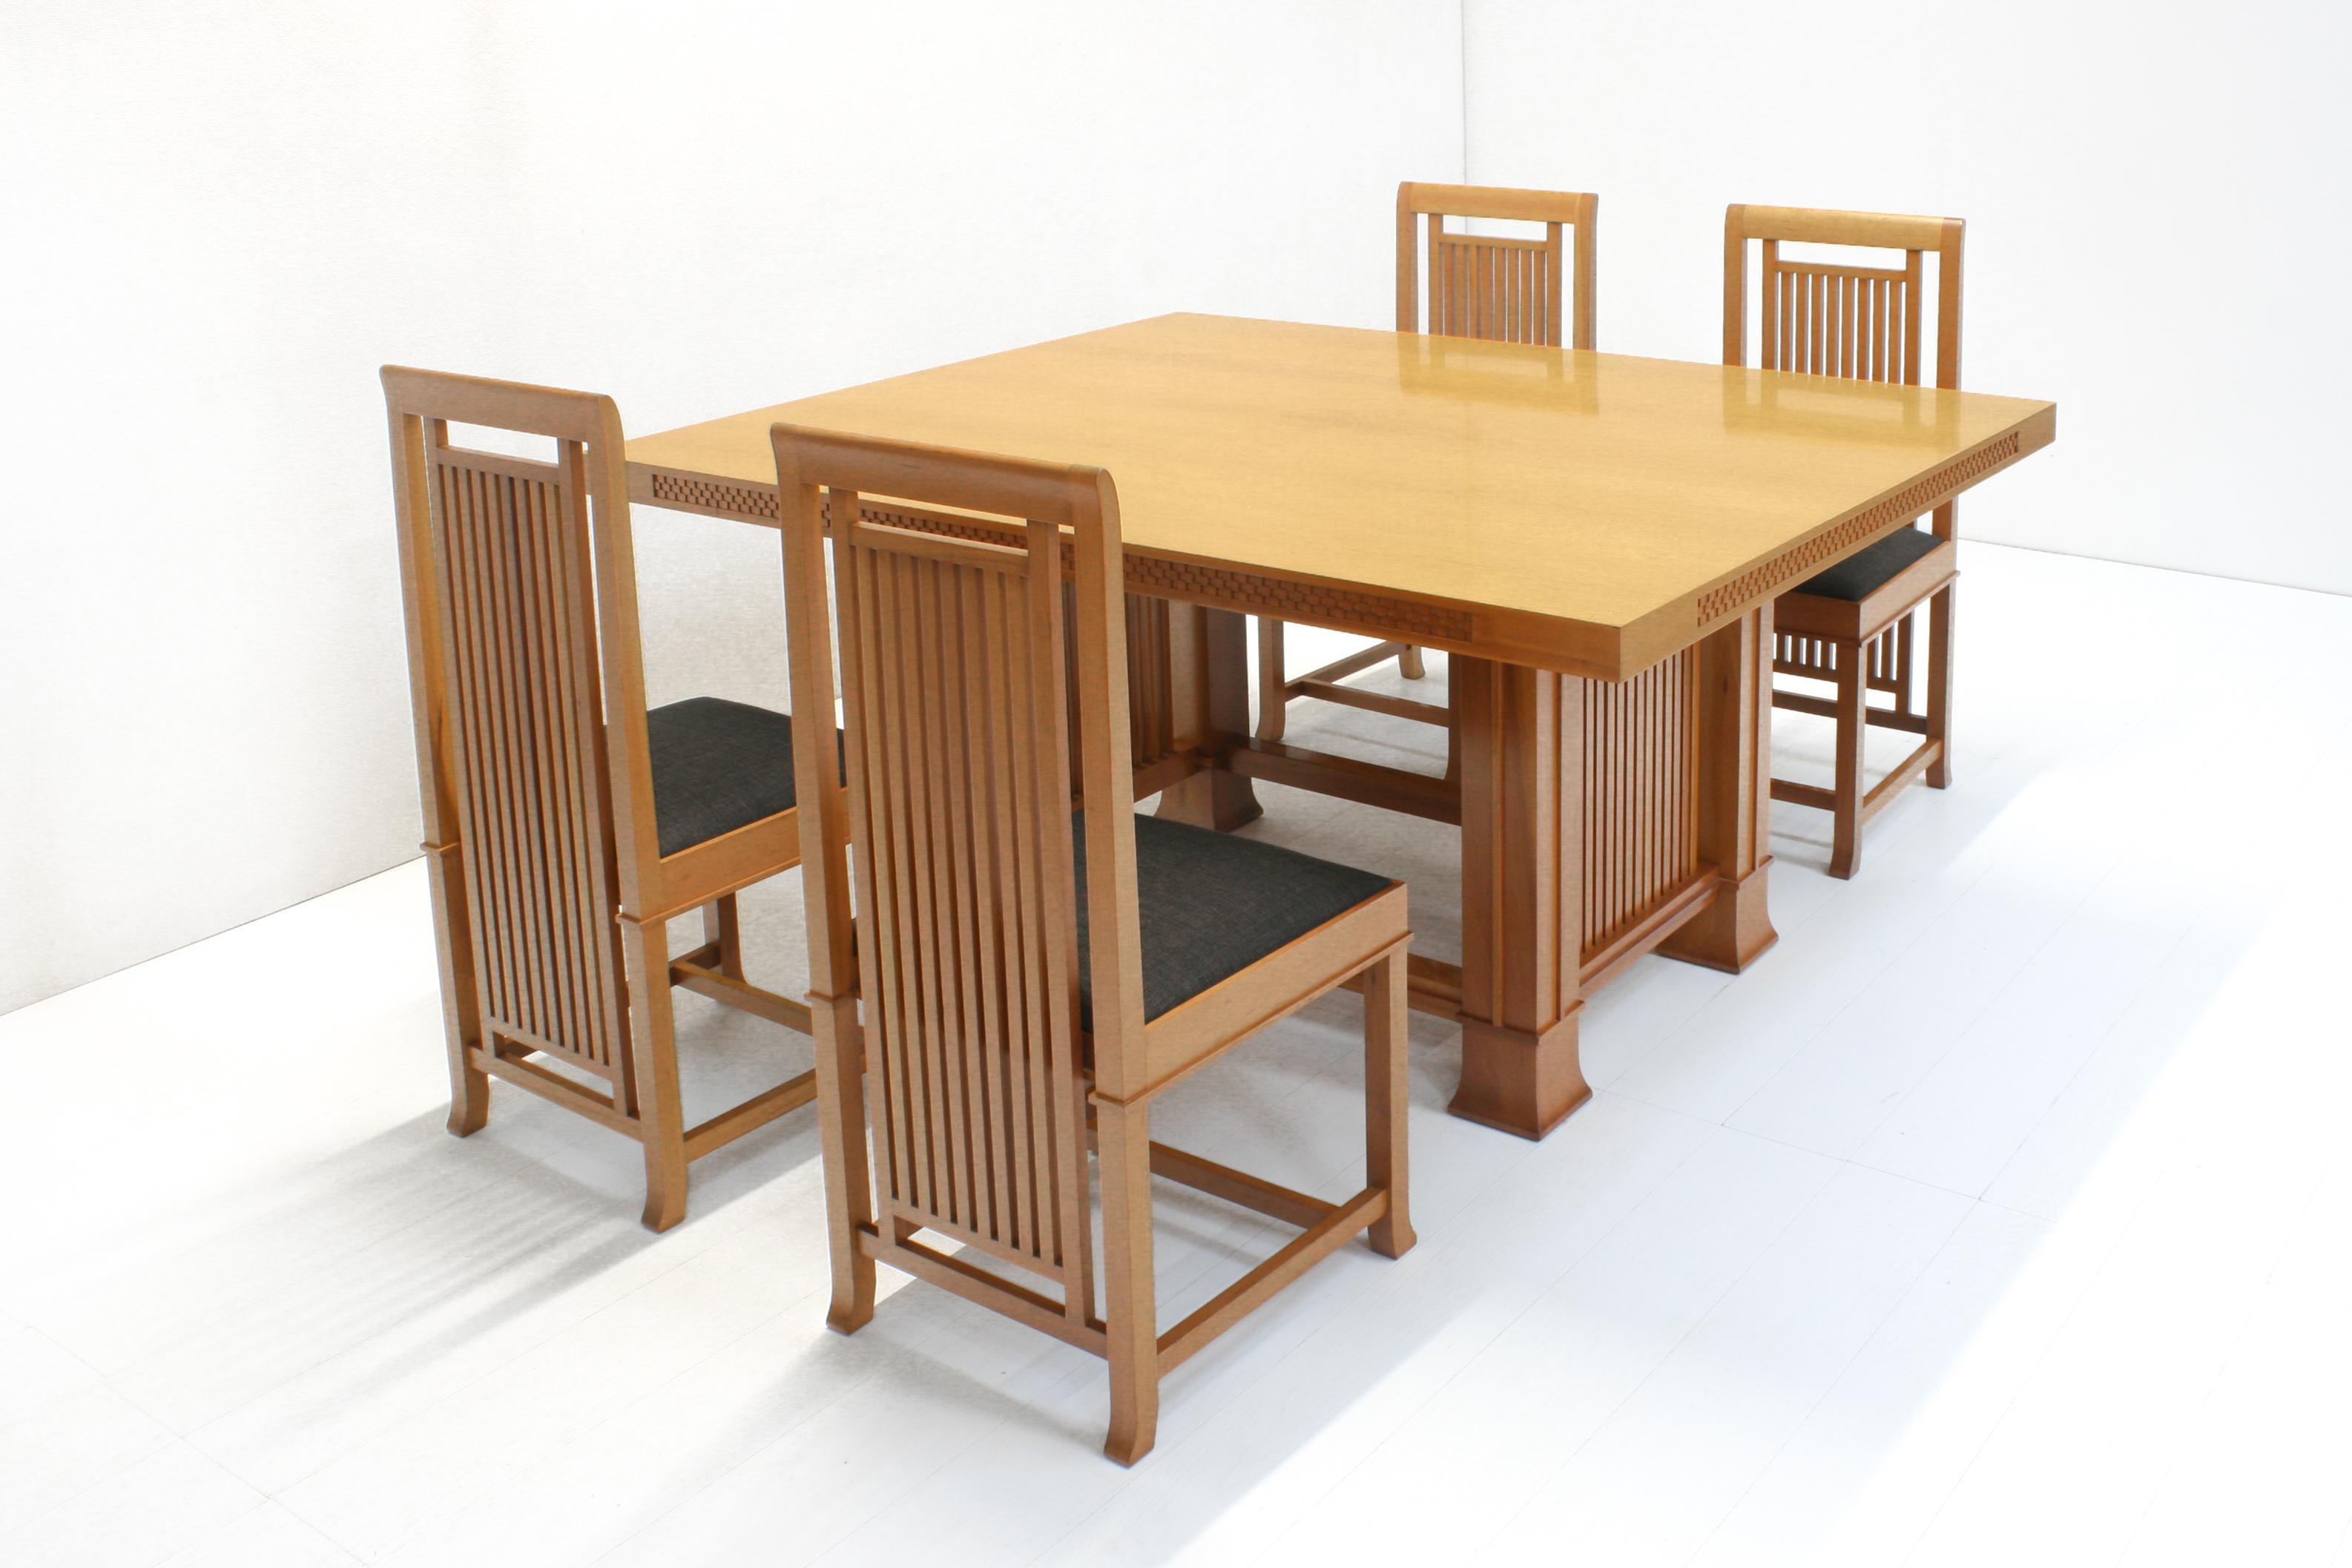 La table 615 Husser a été conçue par Frank Lloyd Wright en 1899 pour la Joseph W. Husser House à Chicago, dans l'Illinois.
La chaise 614 Coonley a été conçue par Frank Lloyd Wright en 1907 pour la maison Avery Coonley à Riverside, dans